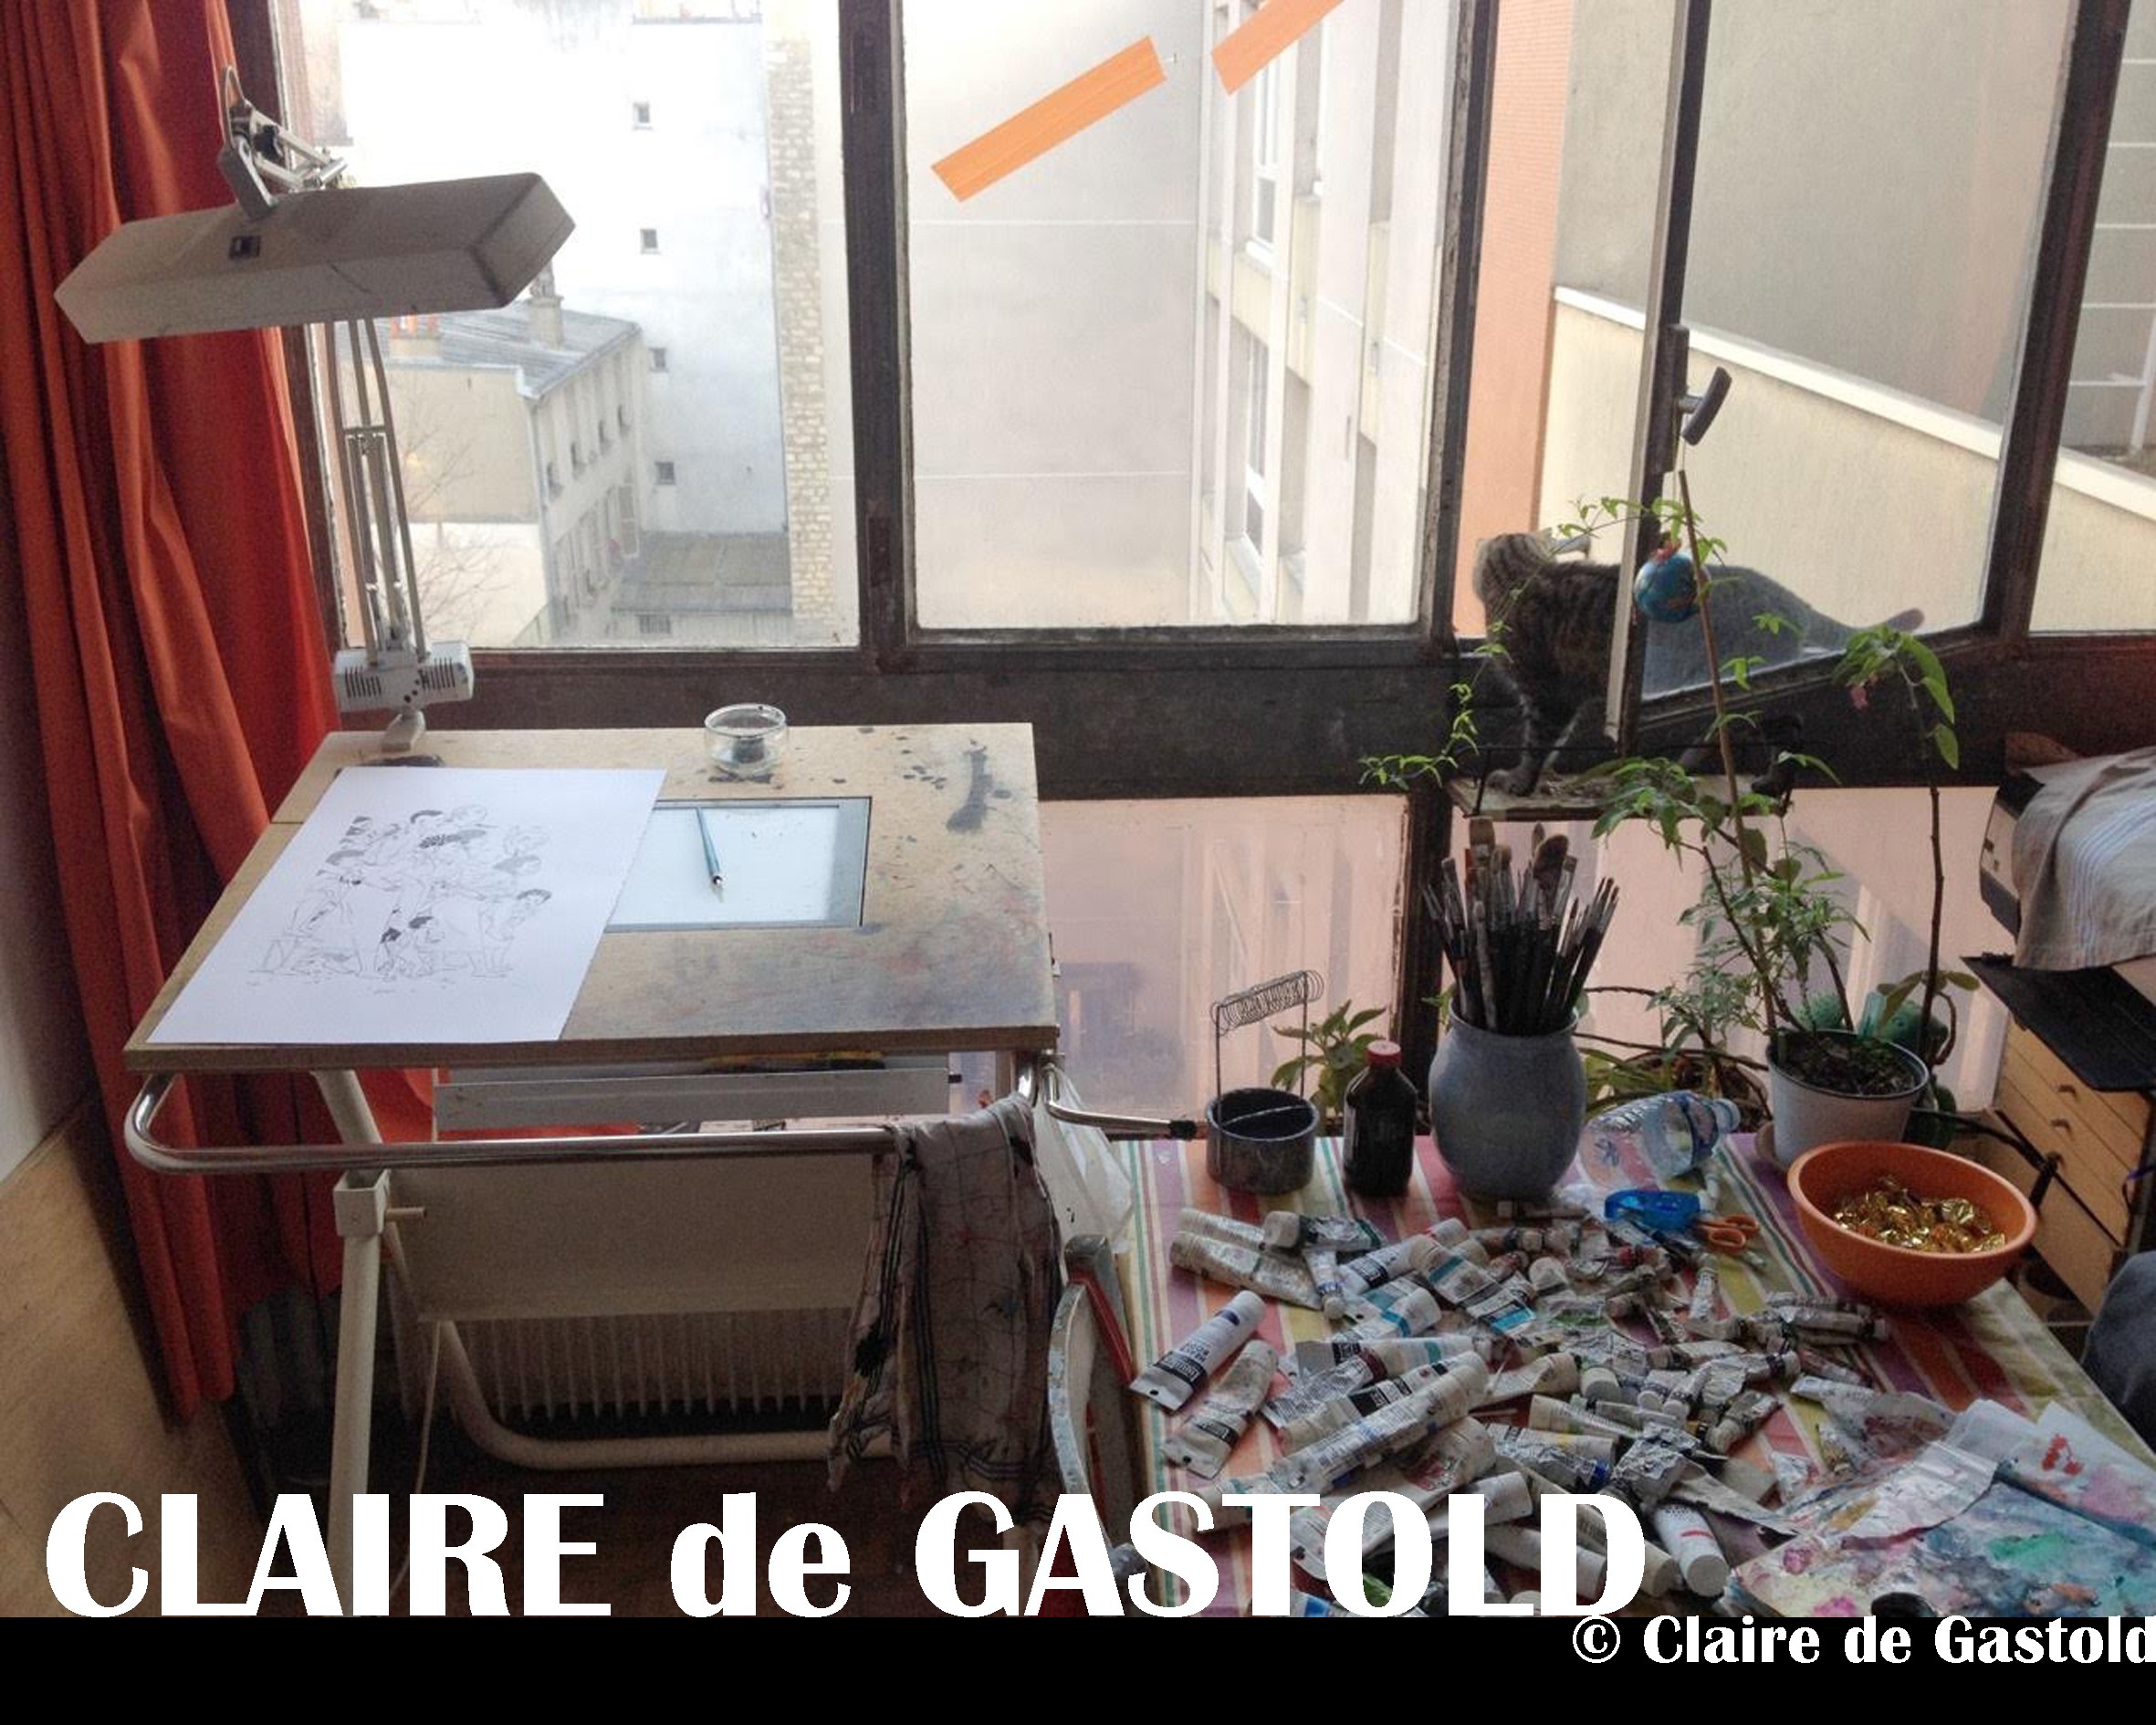 Claire de Gastold